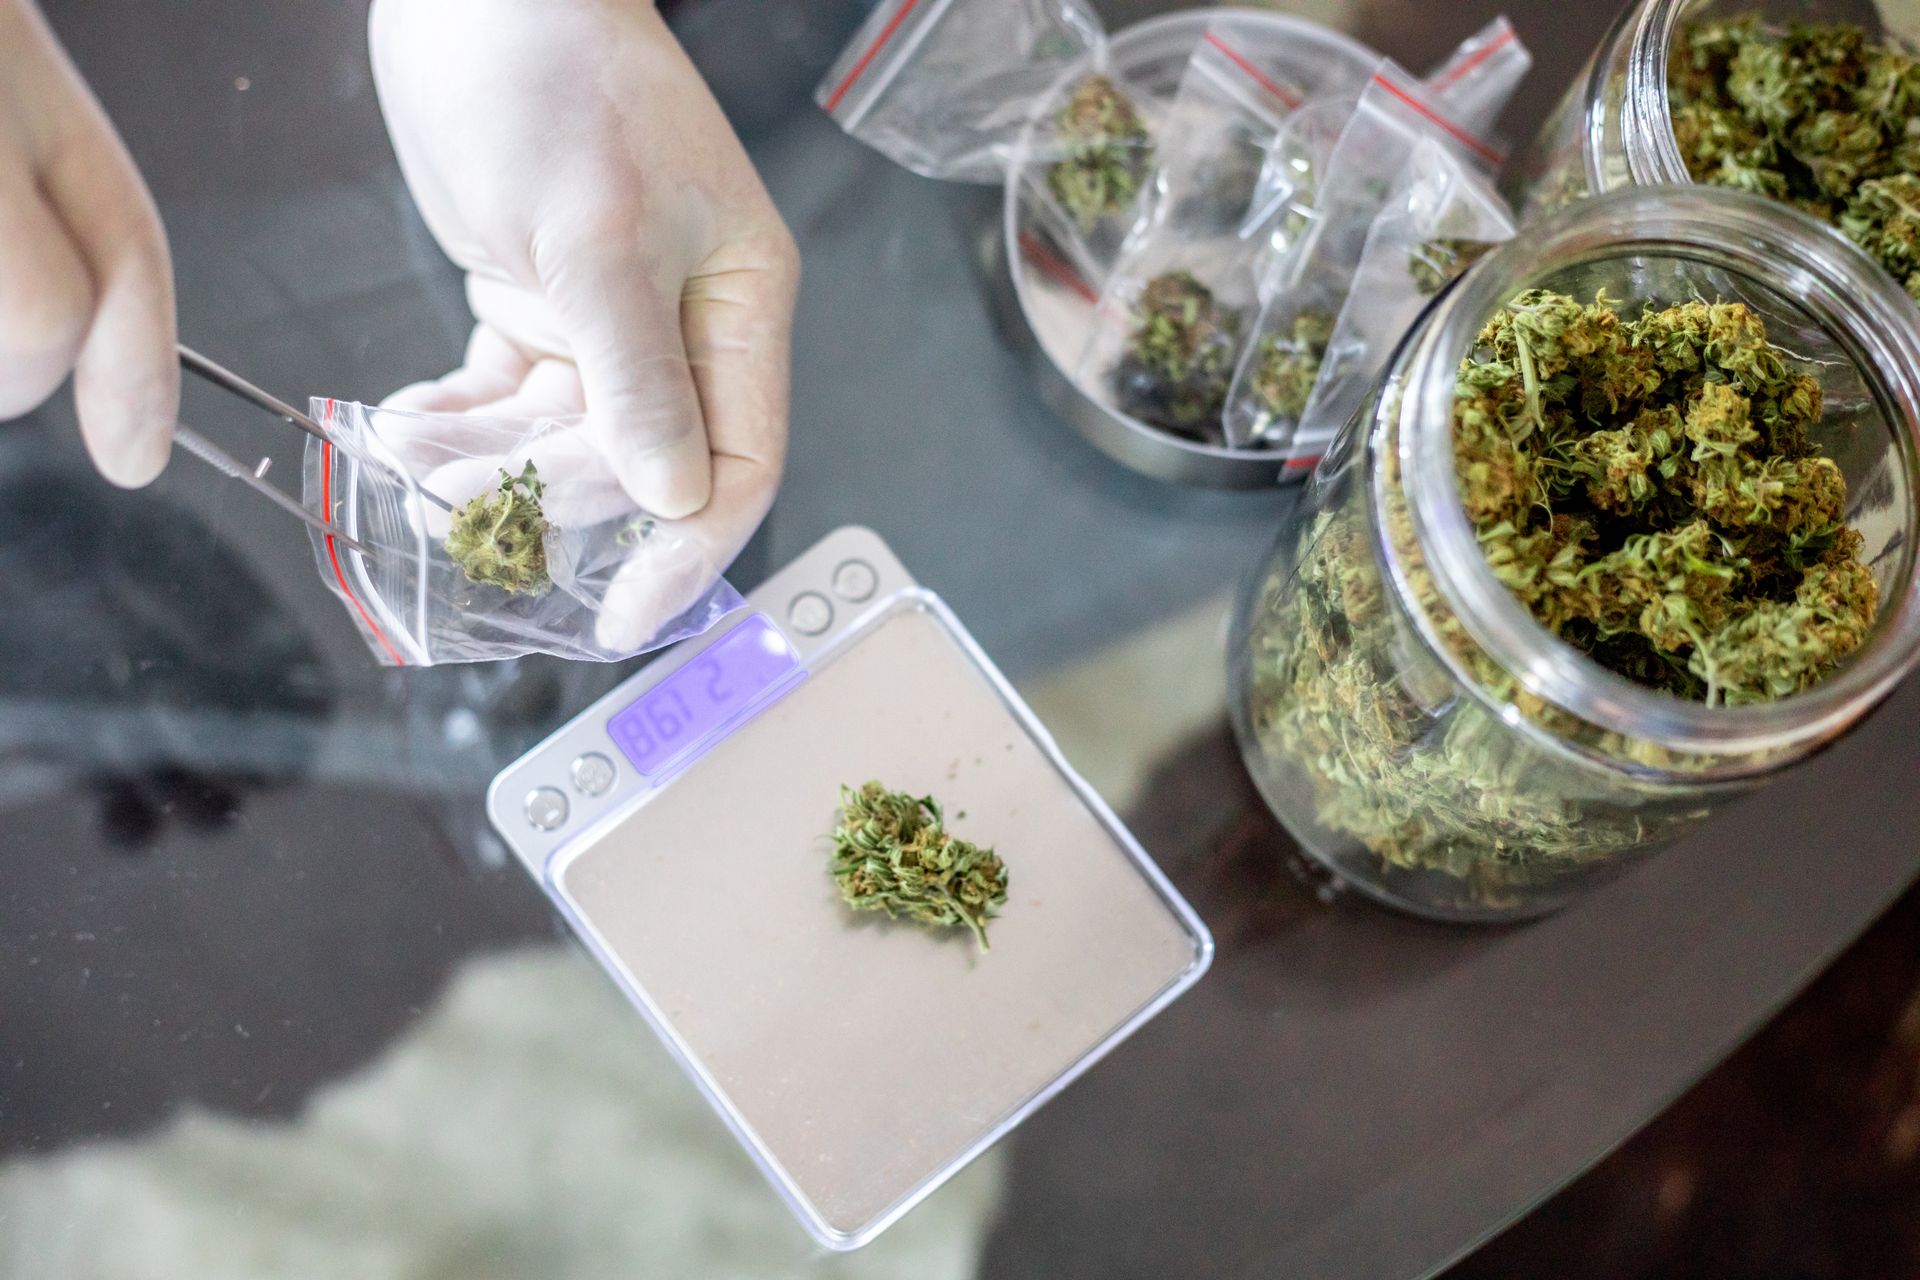 polacy kupują tony medycznej marihuany. resort pokazał dane